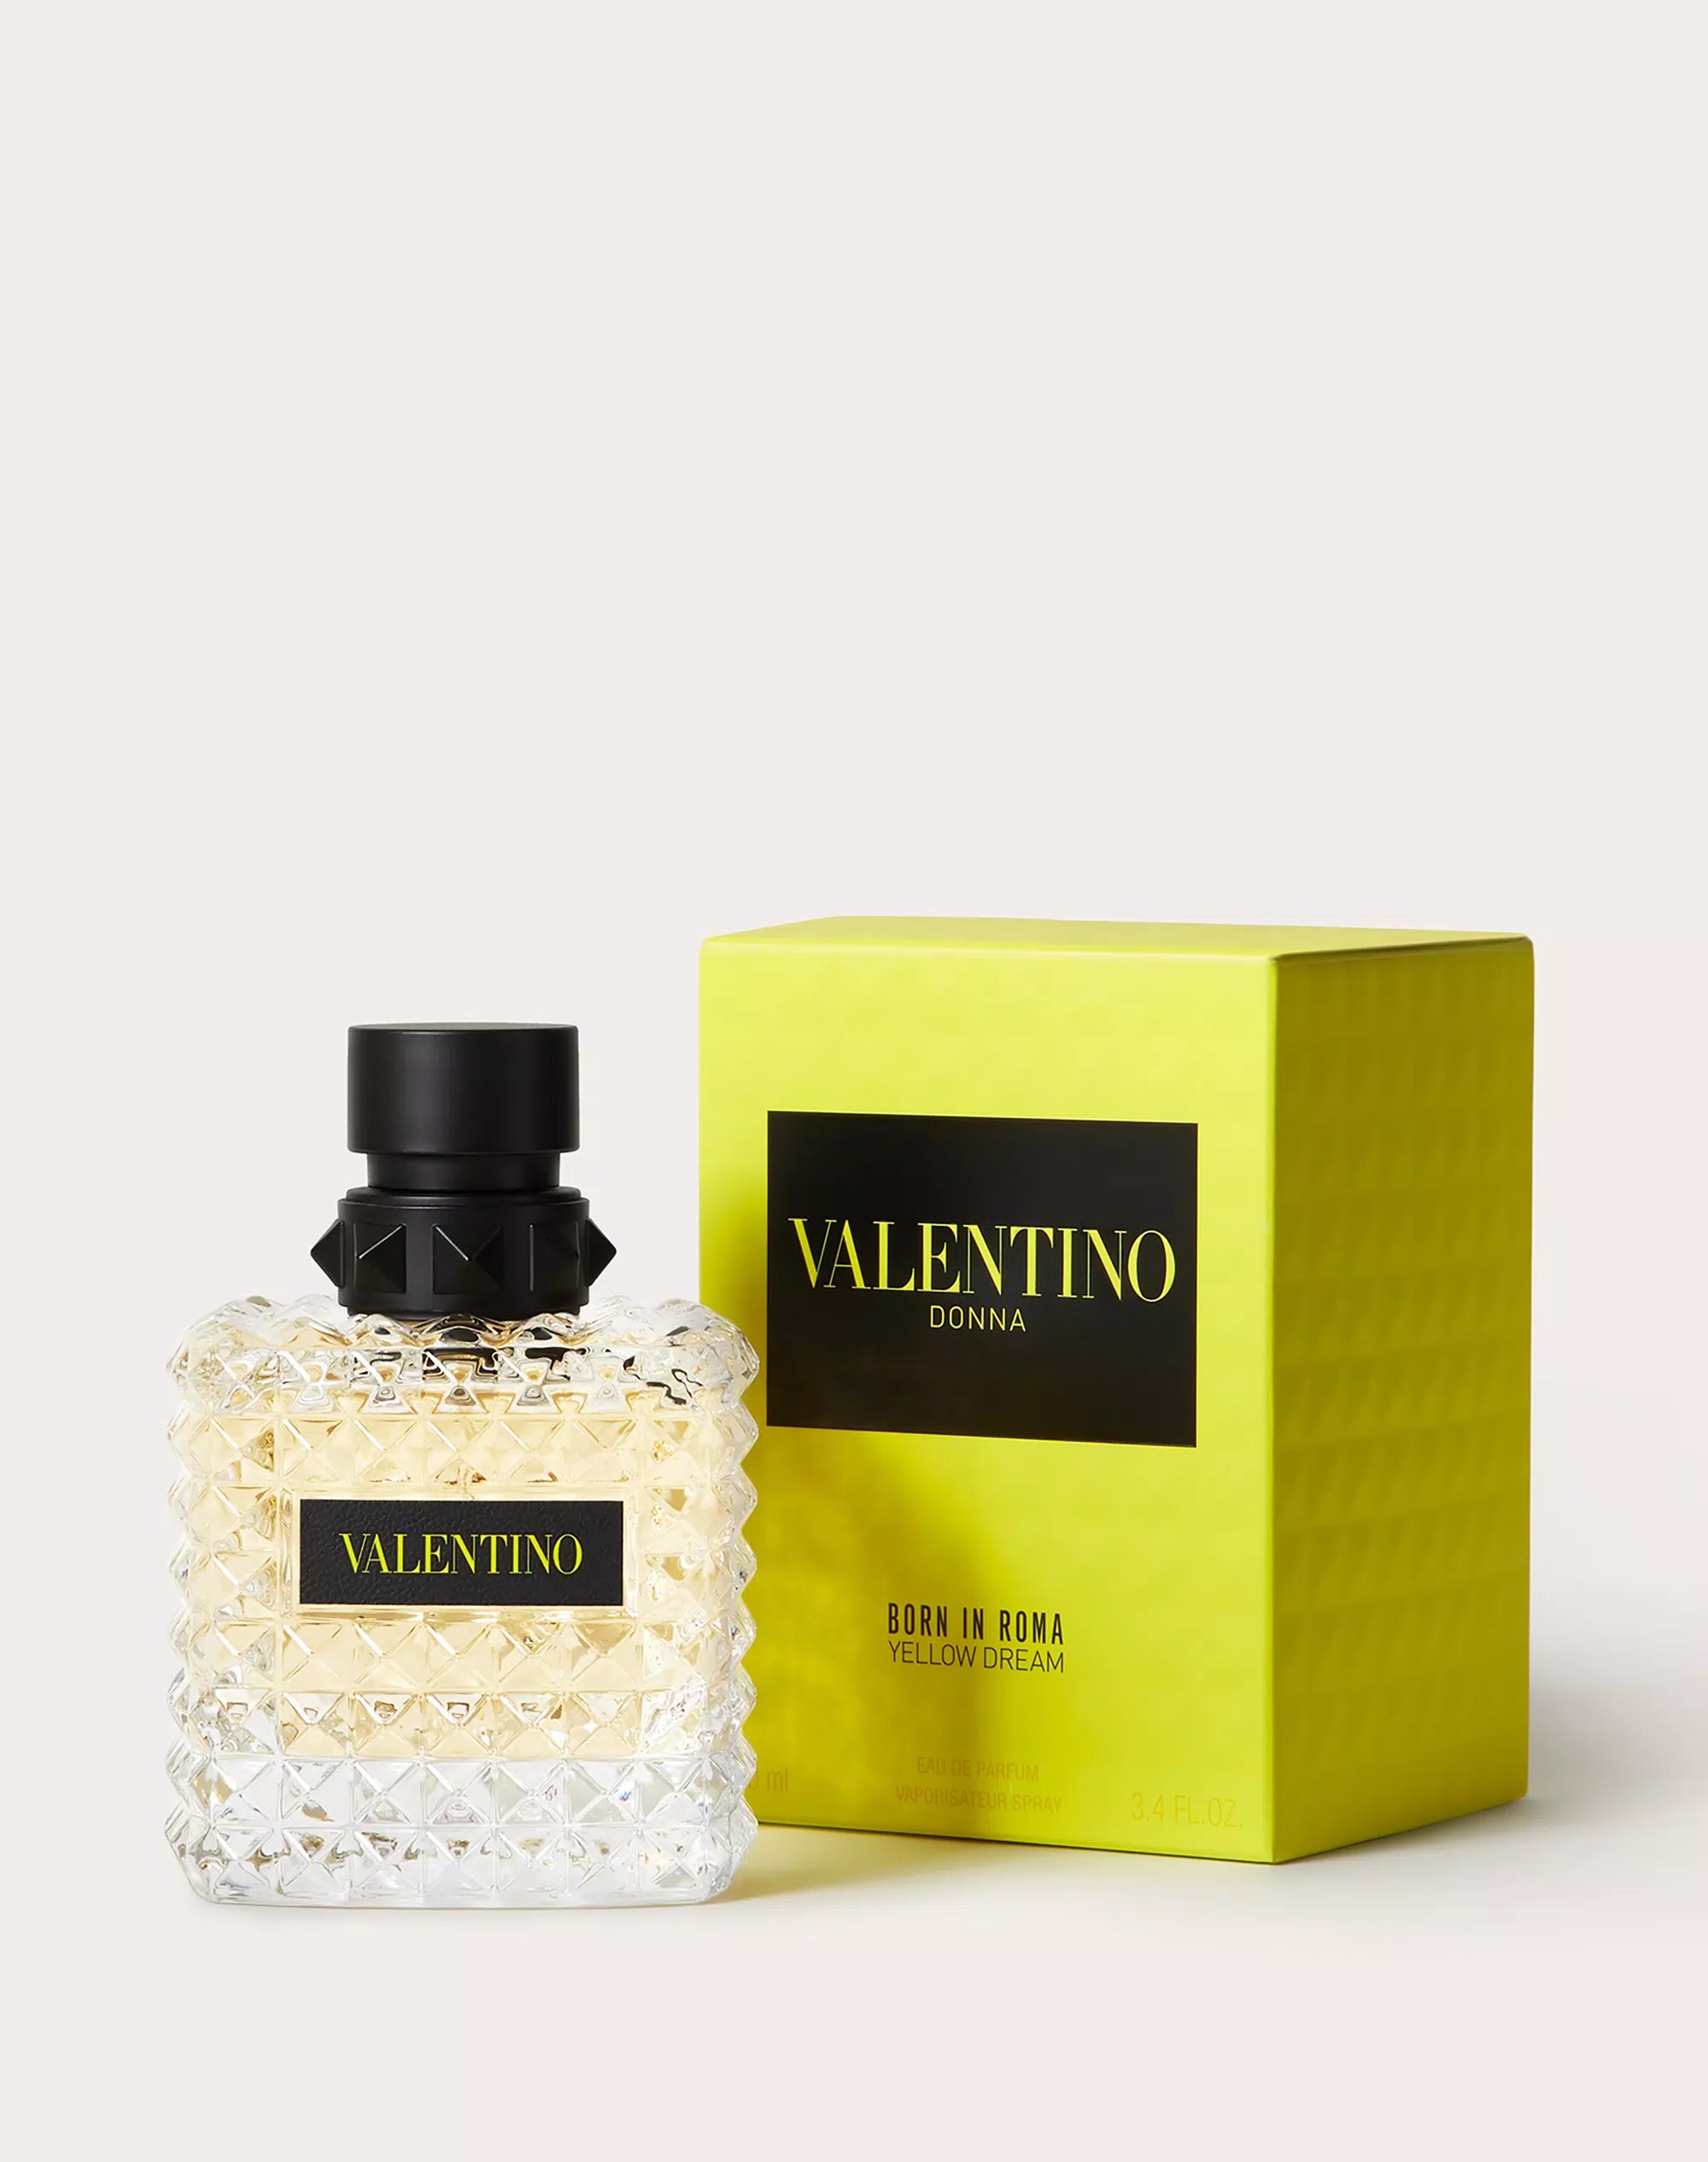 Valentino Donna Born in Roma Yellow Dream Eau De Parfum